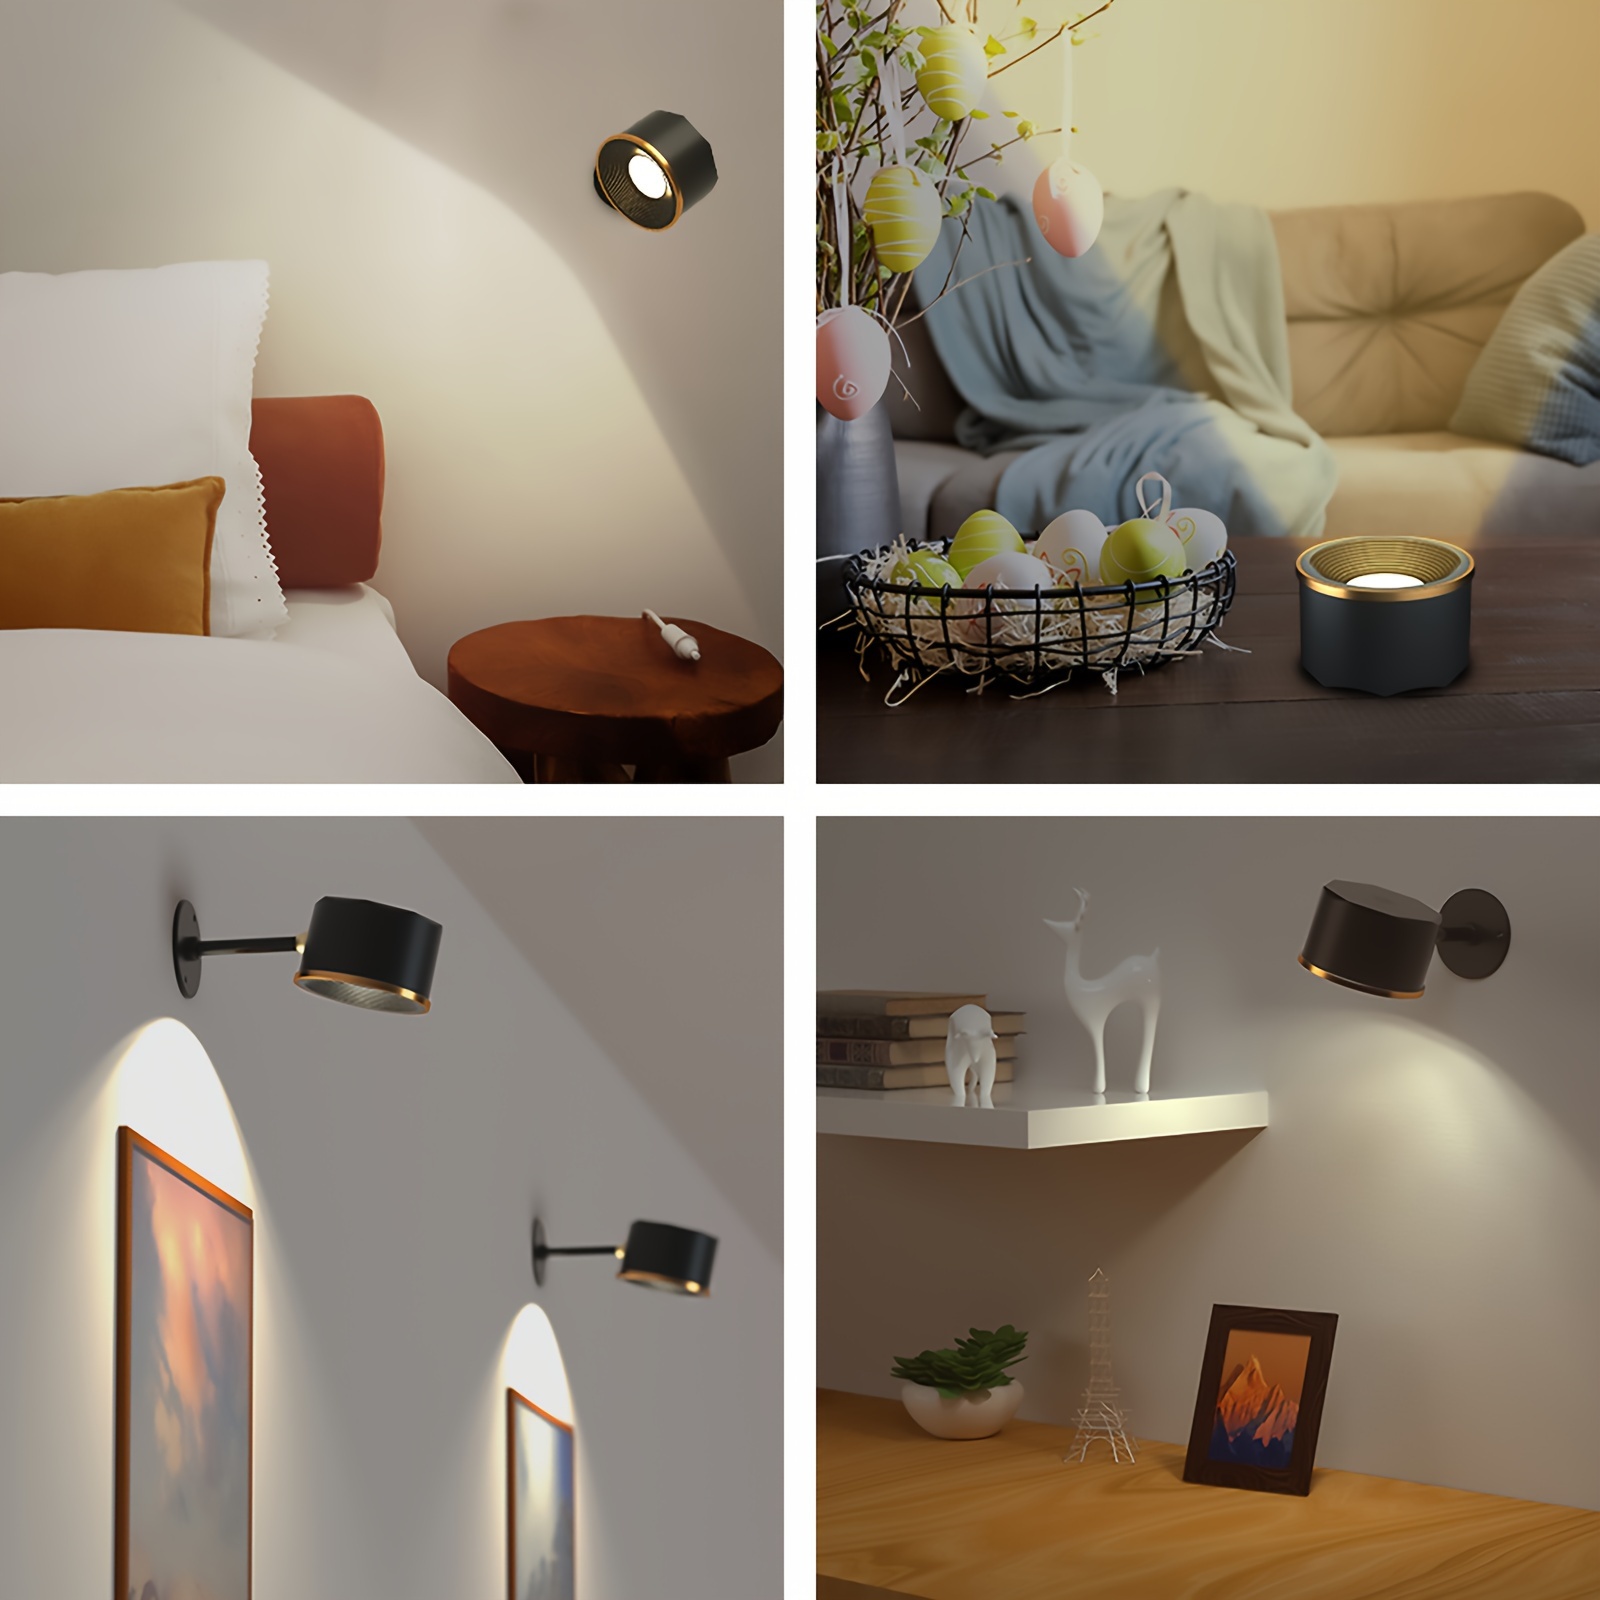 Lámpara LED de pared para interiores con interfaz USB y carga inalámbrica,  moderna luz de pared